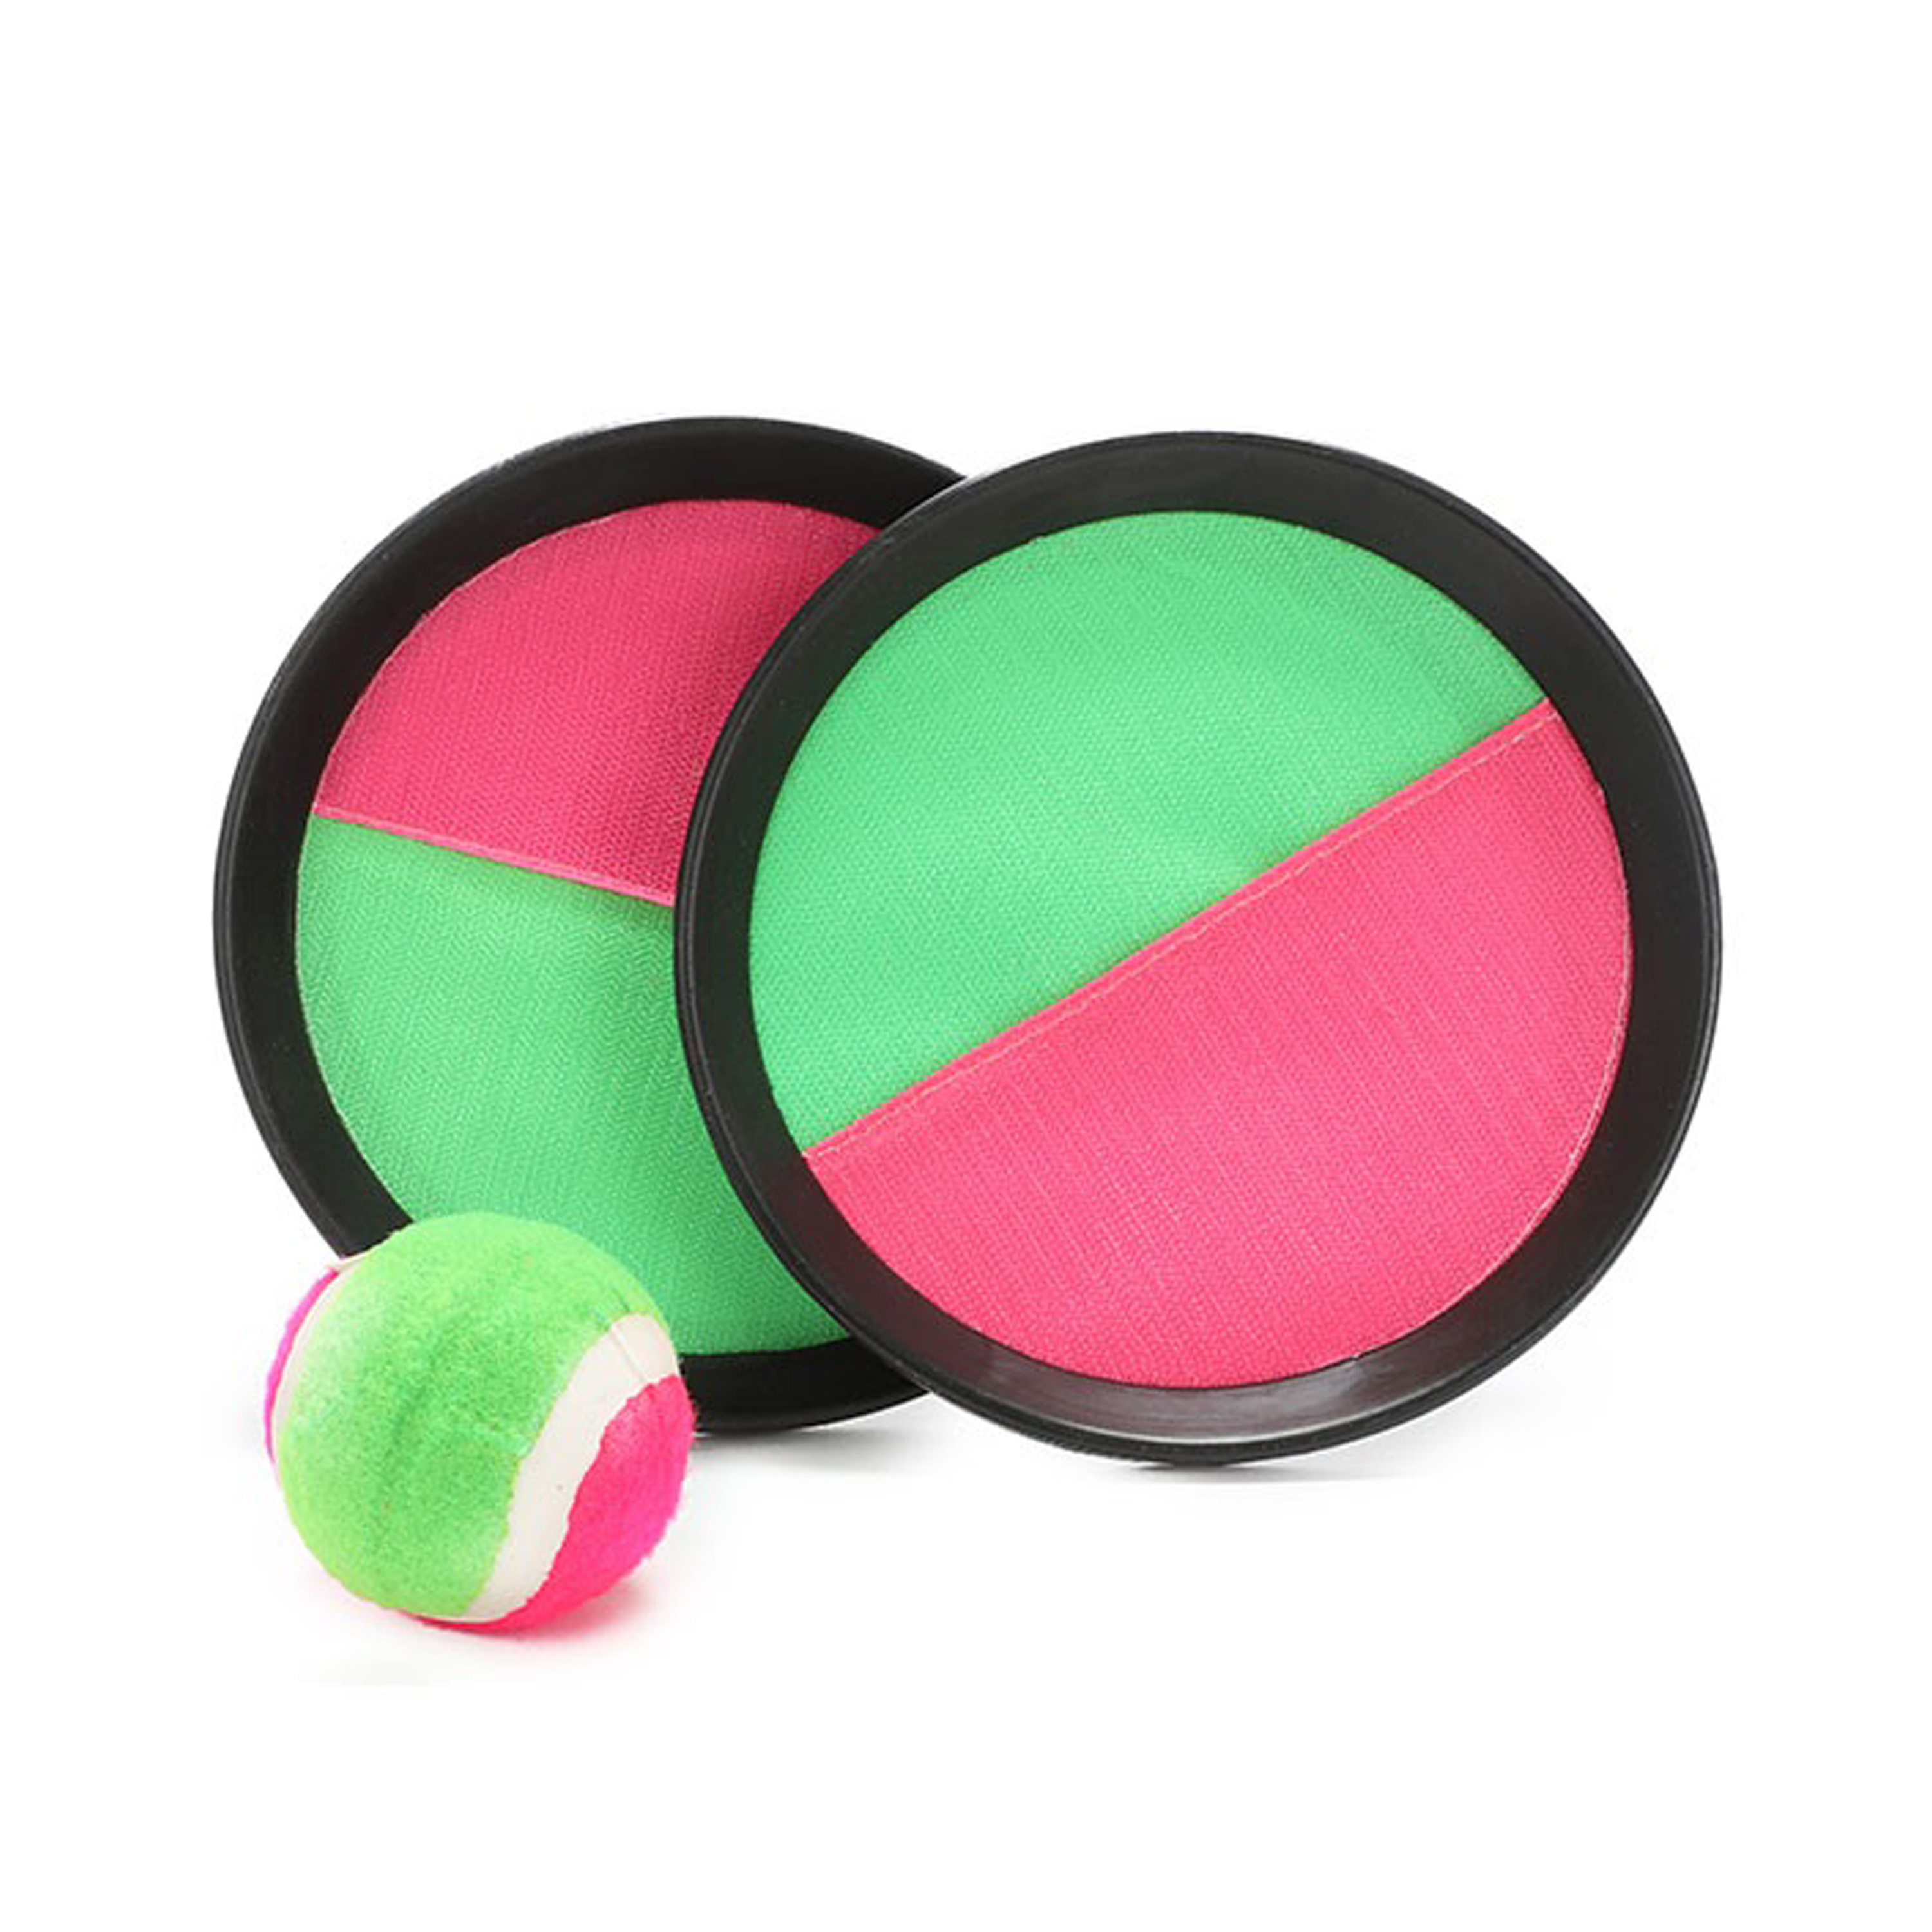 Vangbalspel met klittenband groen-roze 2 schilden en bal buiten-strand spellen